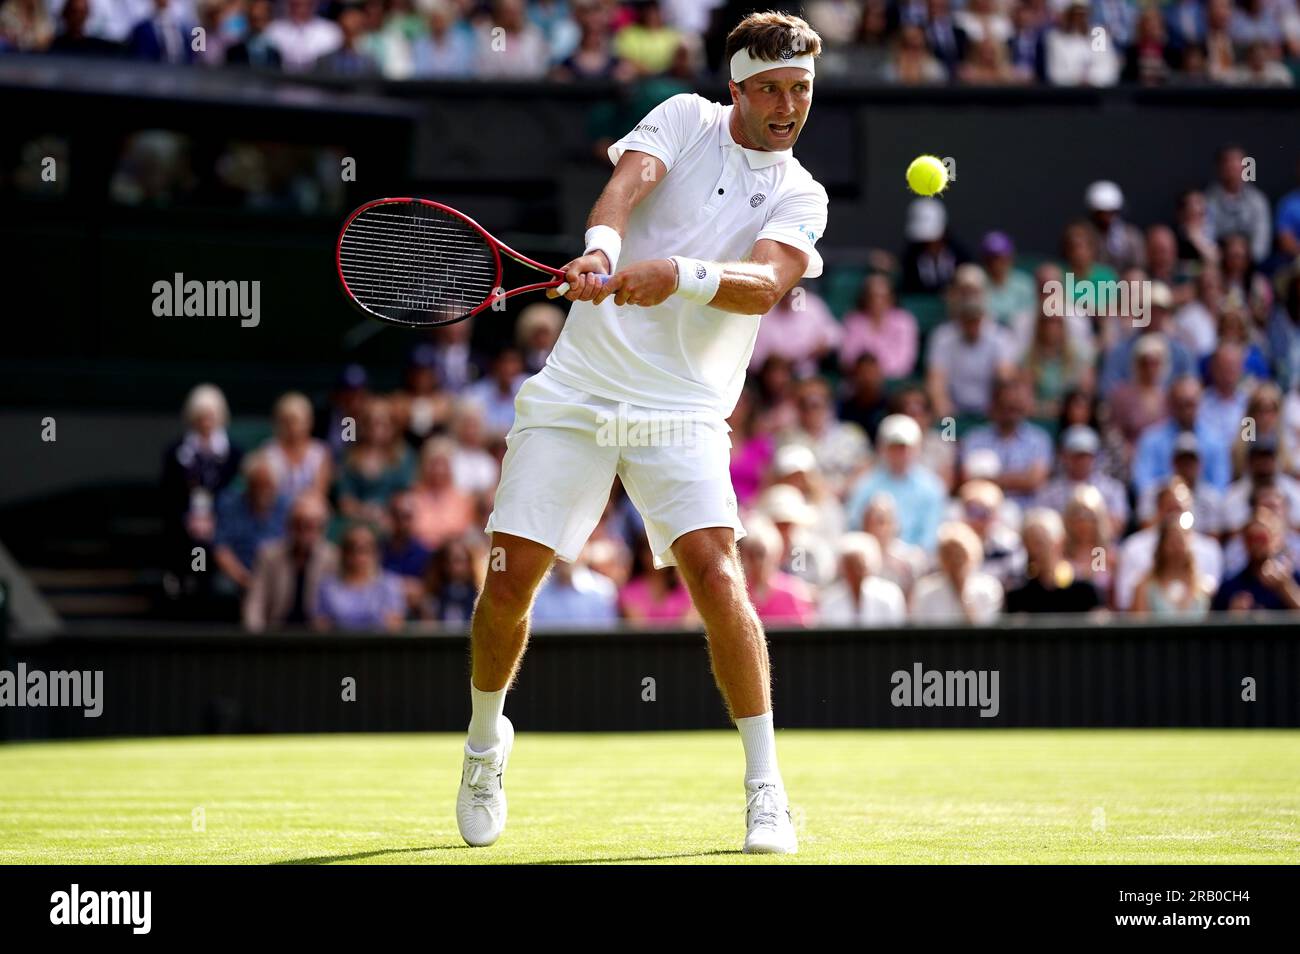 Liam Broady in azione contro Casper Ruud (non nella foto) il quarto giorno dei Campionati di Wimbledon 2023 all'All England Lawn Tennis and Croquet Club di Wimbledon. Data foto: Giovedì 6 luglio 2023. Foto Stock